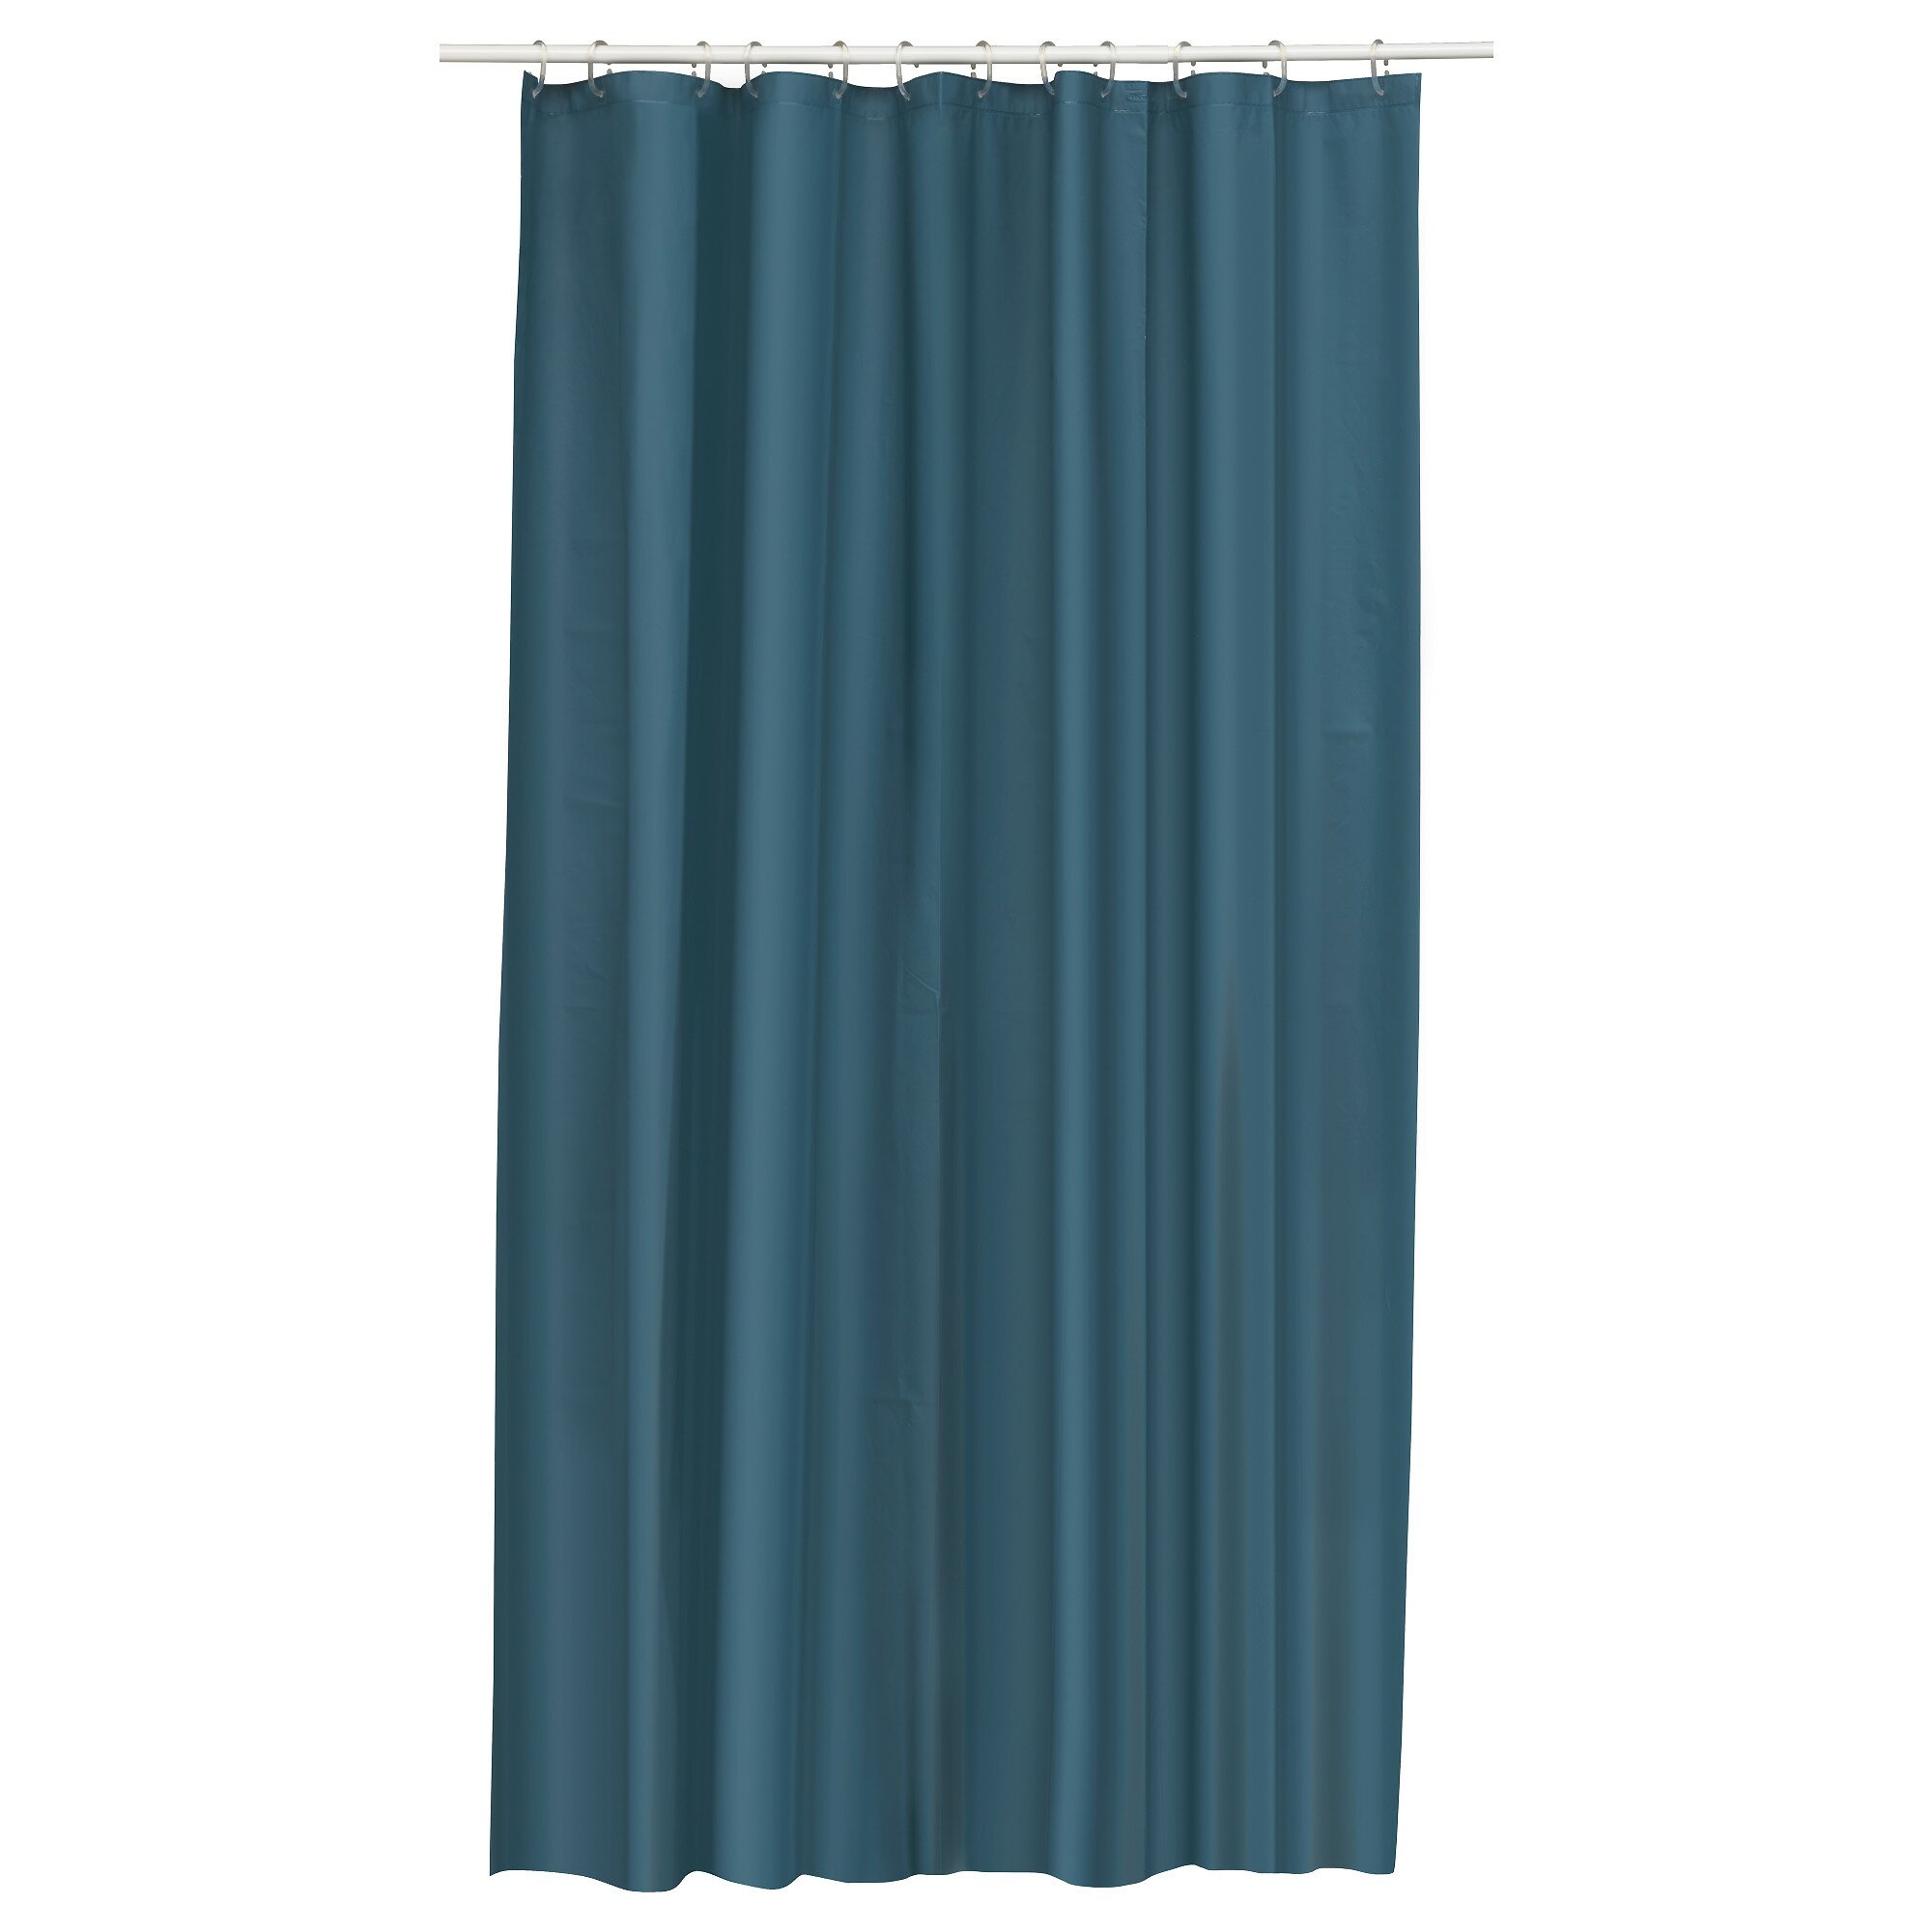 Shower Curtain Rod | Tahari Shower Curtain | Ikea Shower Curtain